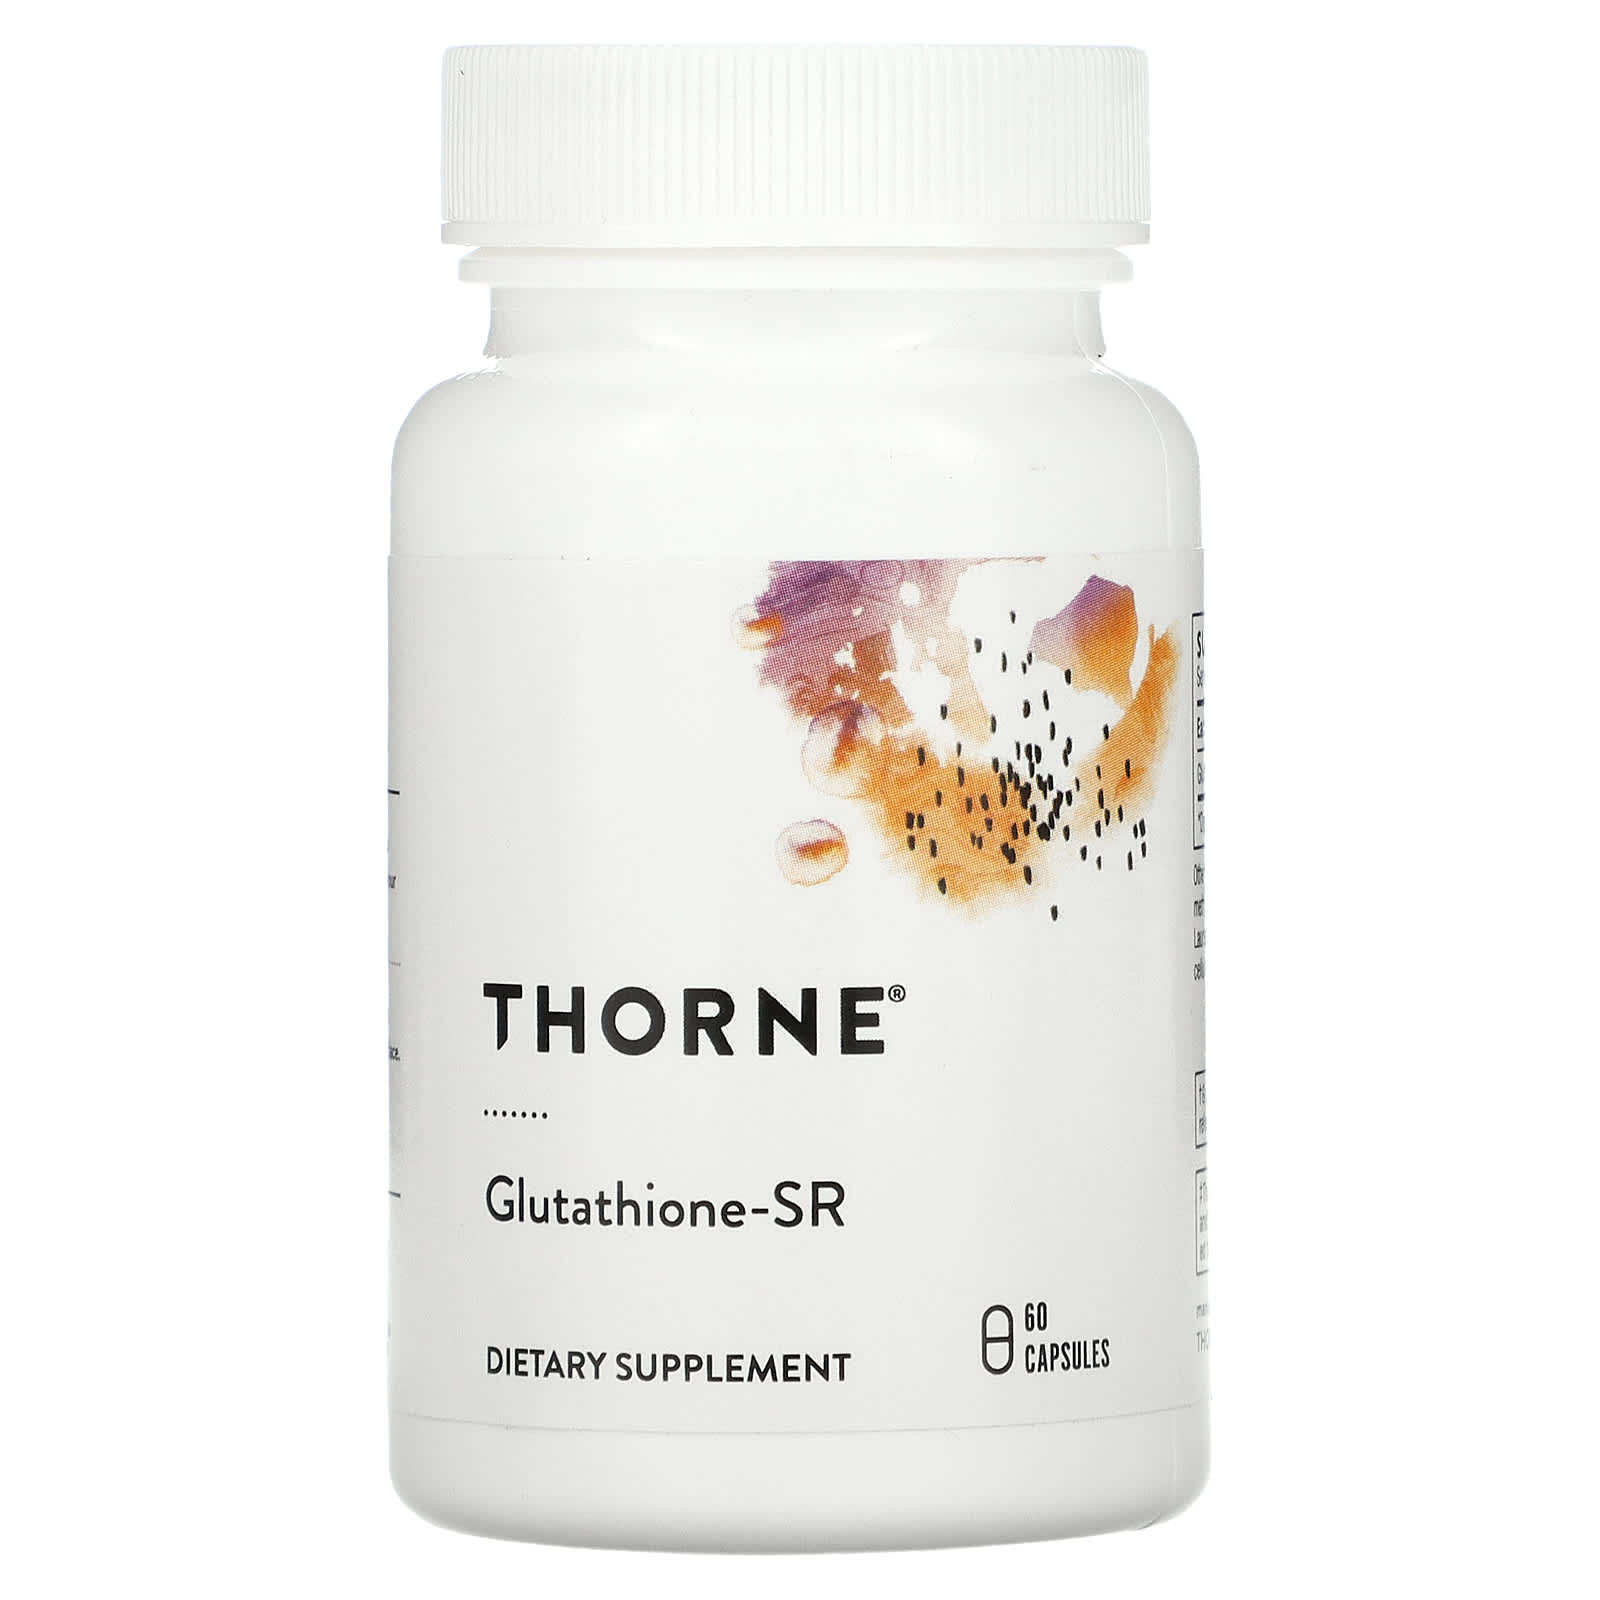 Thorne - Glutathione-SR - 60 Capsules